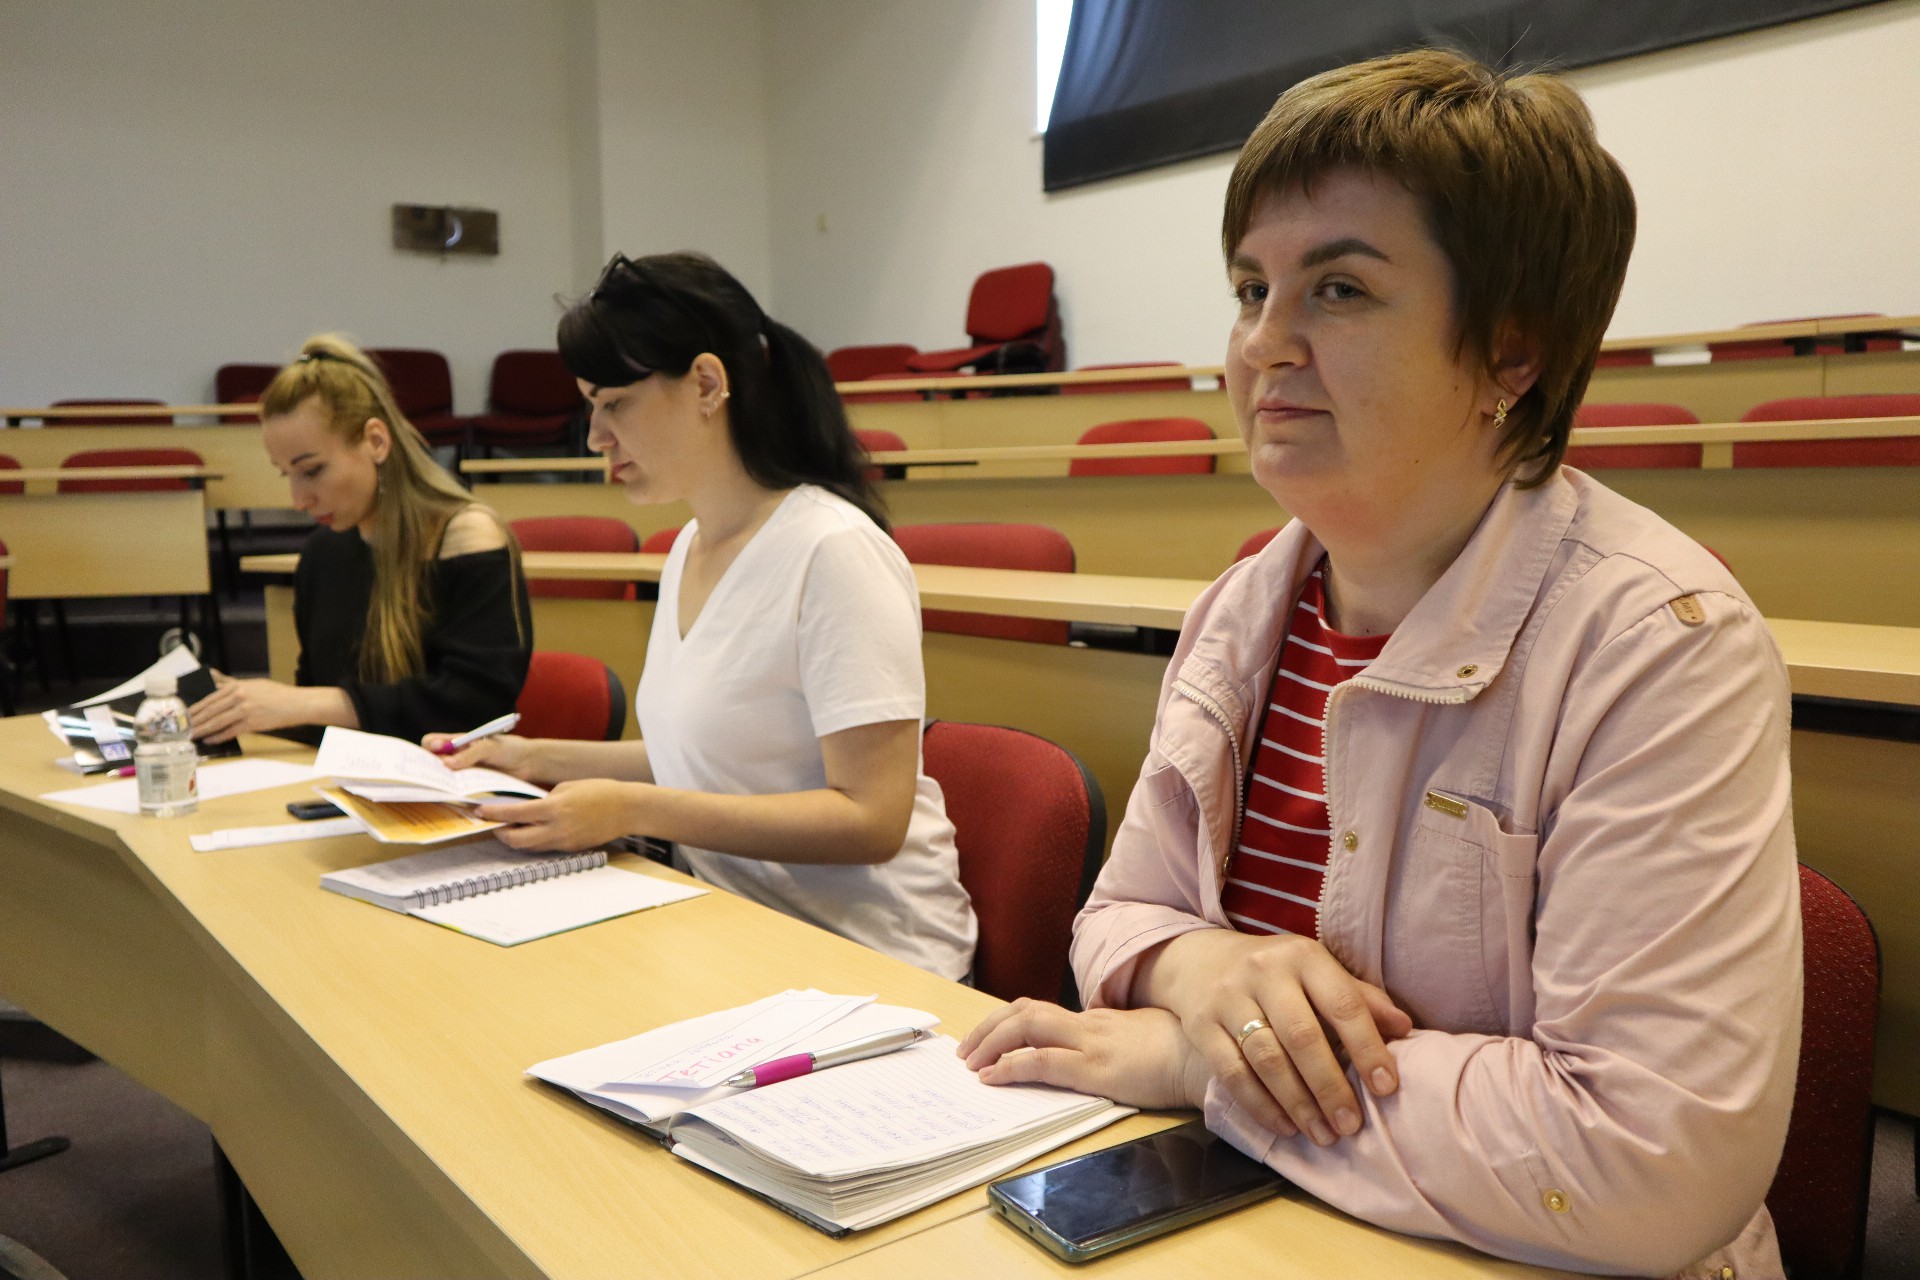 Ukrajinští uprchlíci se učí česky. Někteří už projevili zájem o práci